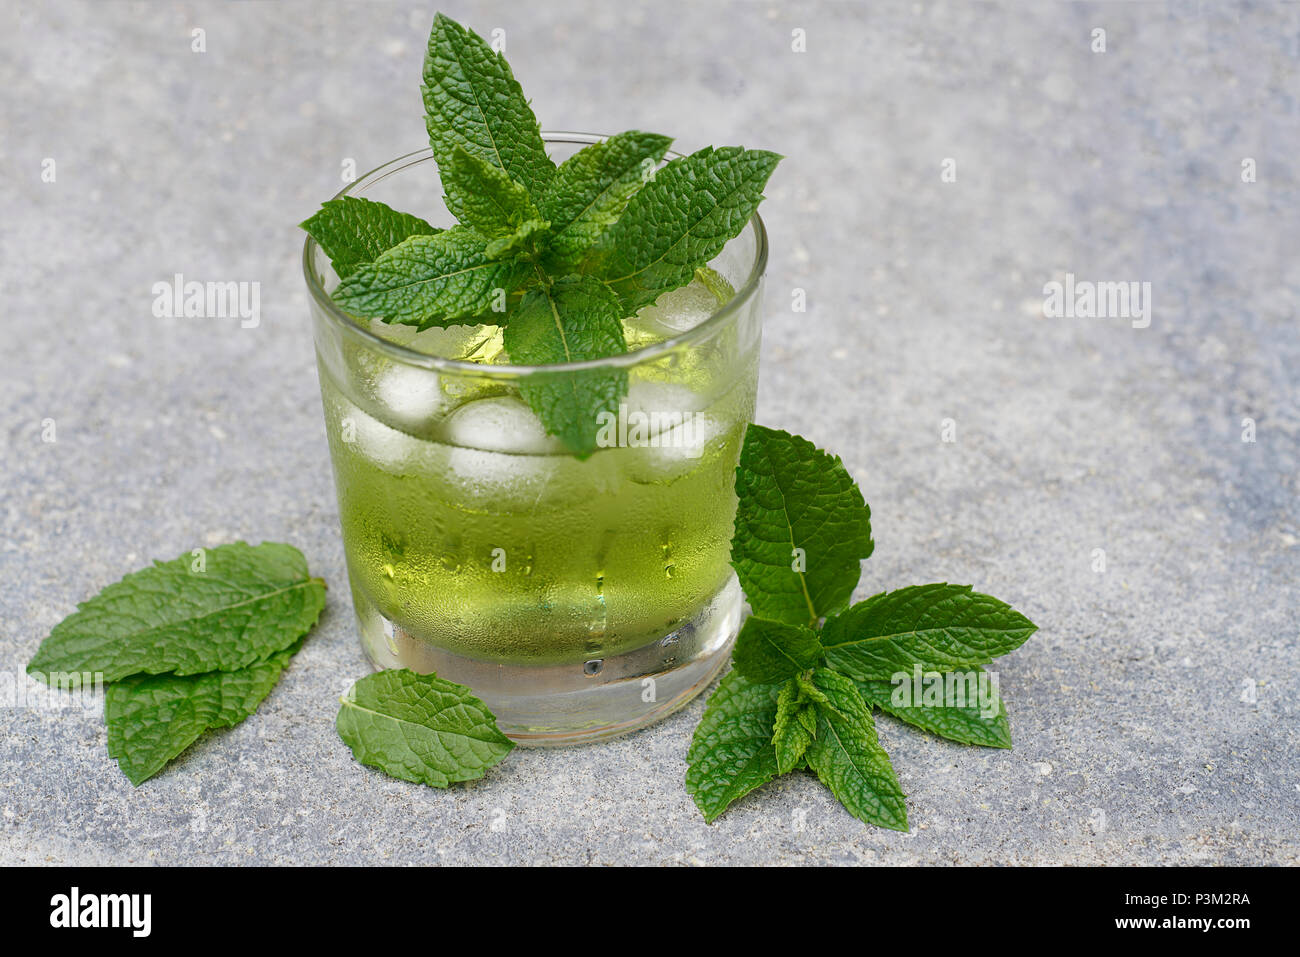 Un verre de liquide vert clair est refroidi avec des glaçons et de la buée. Il se dresse sur un sol en béton. Les feuilles de menthe de l'herbe "menthe maroc' decorat Banque D'Images